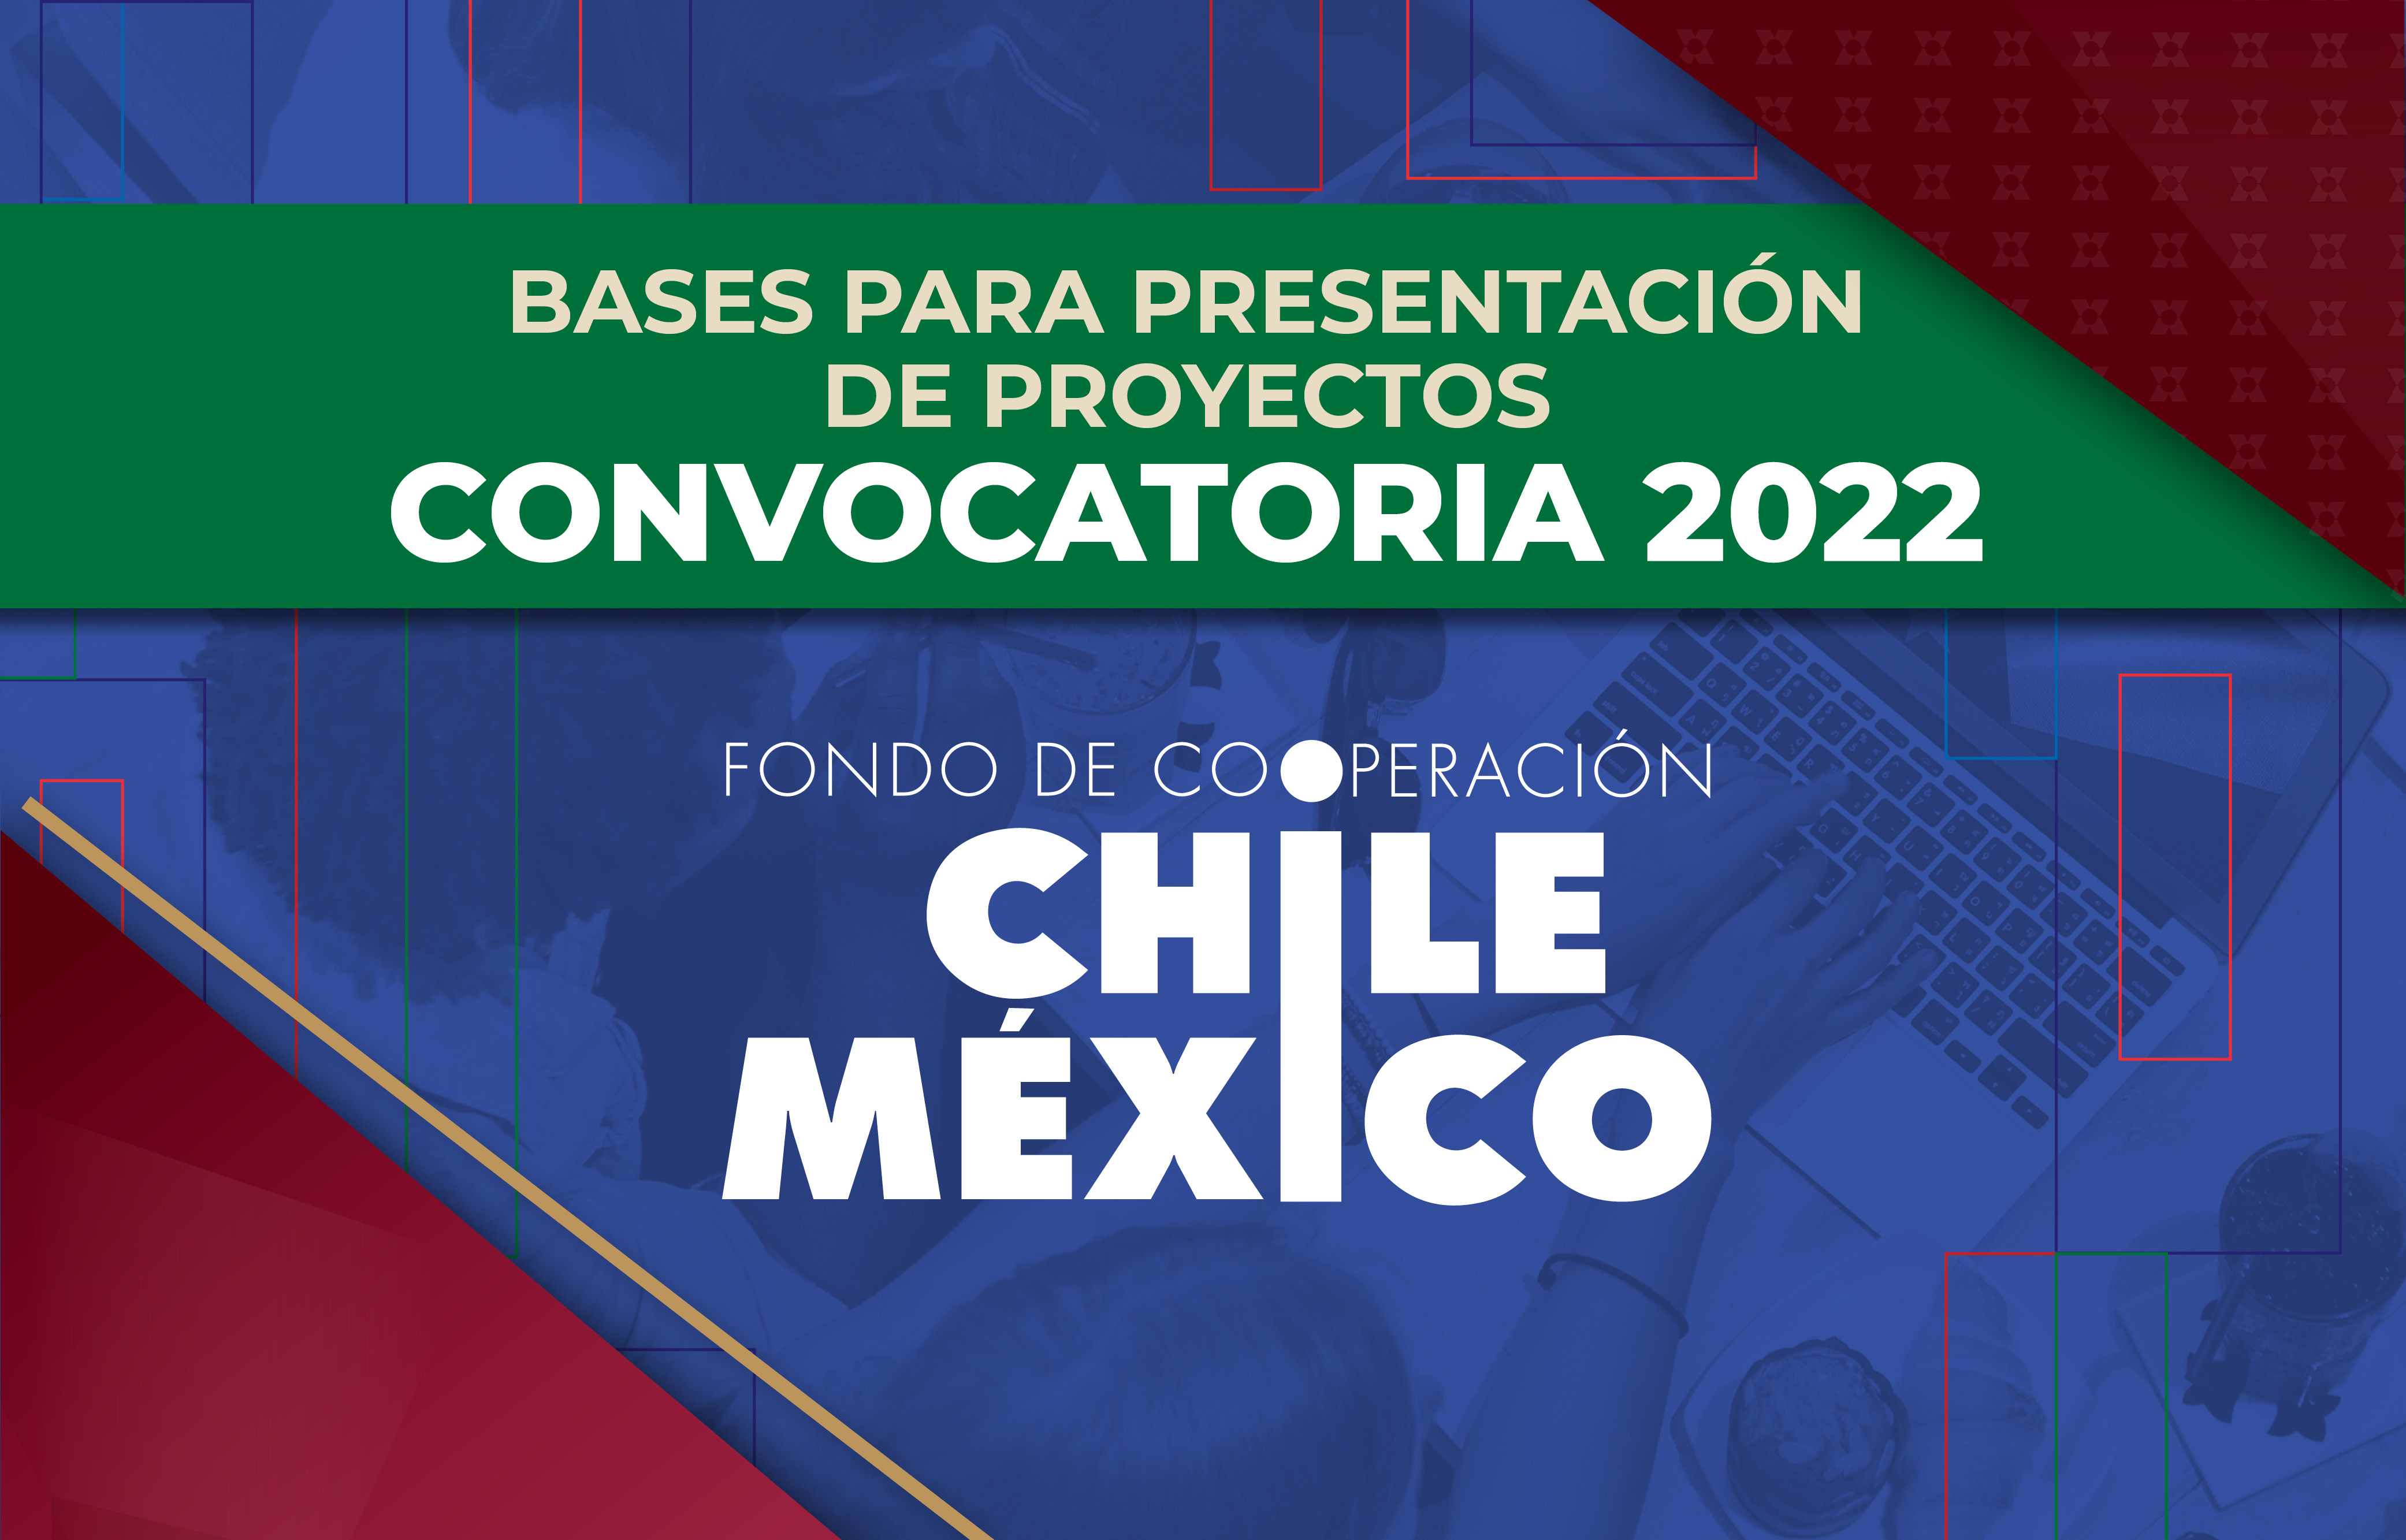 Convocatoria Fondo de Cooperación Chile-México 